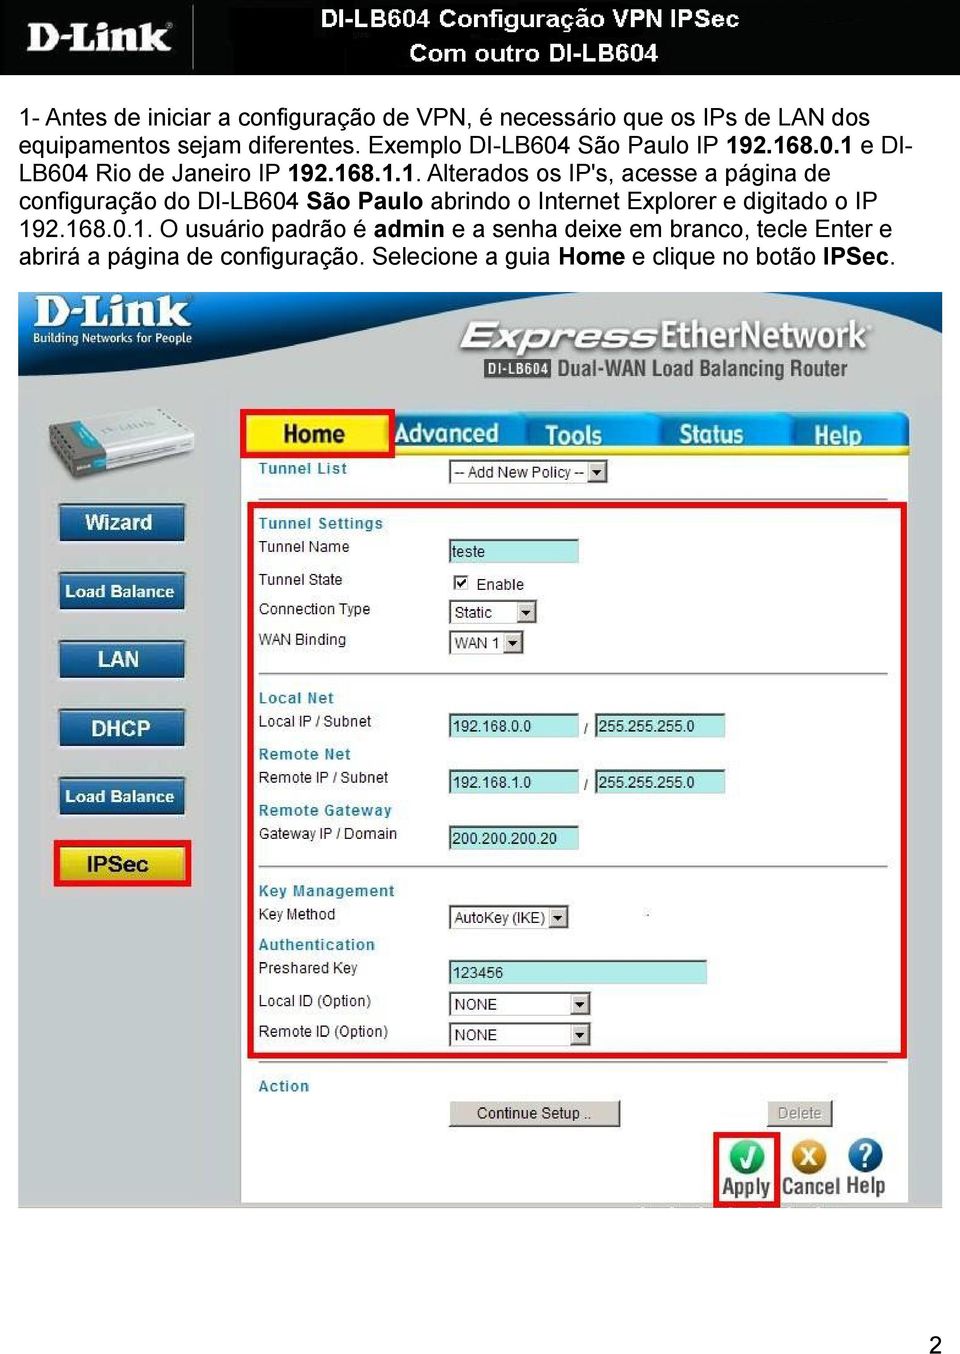 2.168.0.1 e DI- LB604 Rio de Janeiro IP 192.168.1.1. Alterados os IP's, acesse a página de configuração do DI-LB604